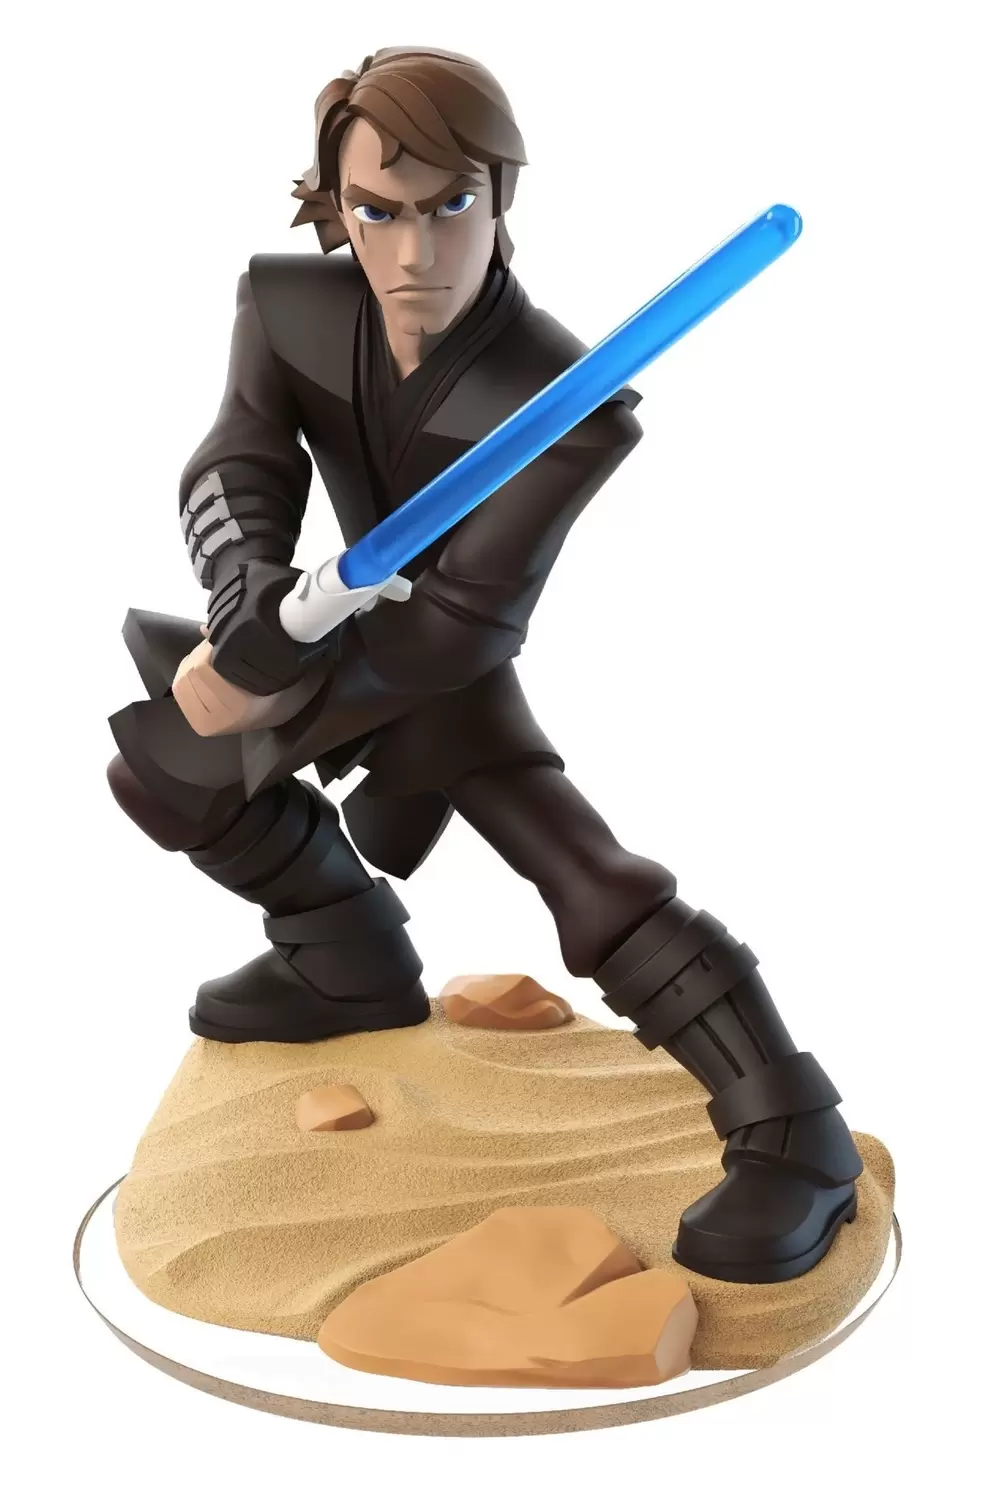 Disney Infinity Action figures - Anakin Skywalker